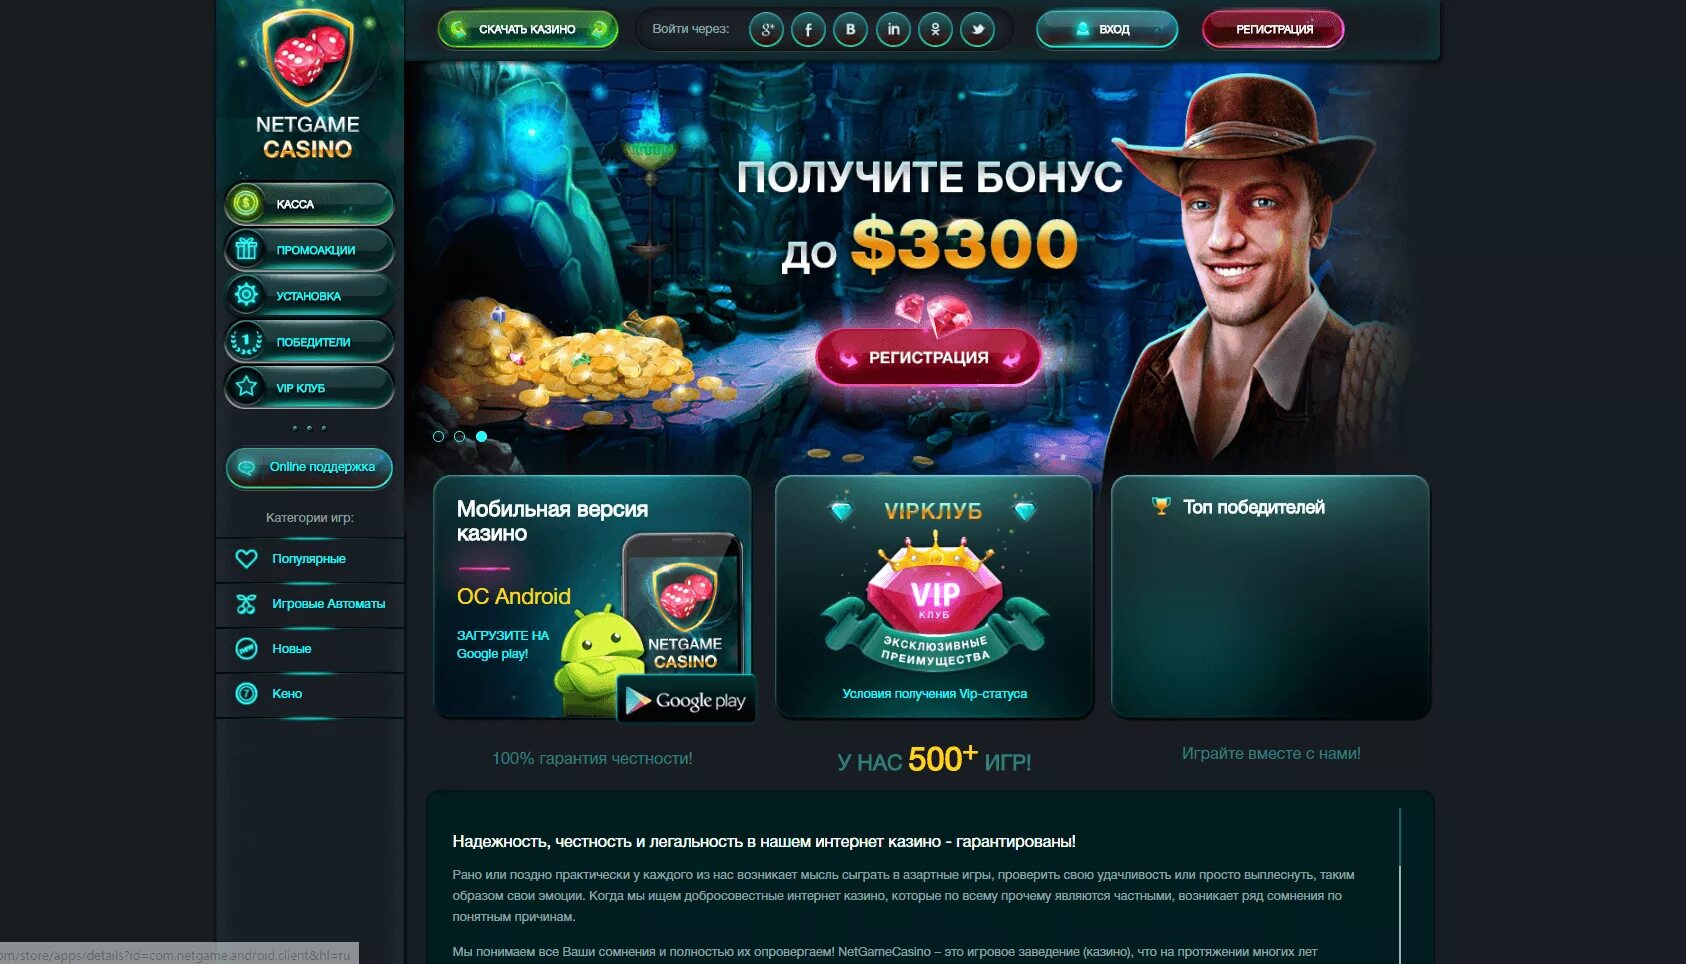 Сайты казино. Русские порталы казино. Список казино. Бонусы казино. Игры на бонусы с выводом